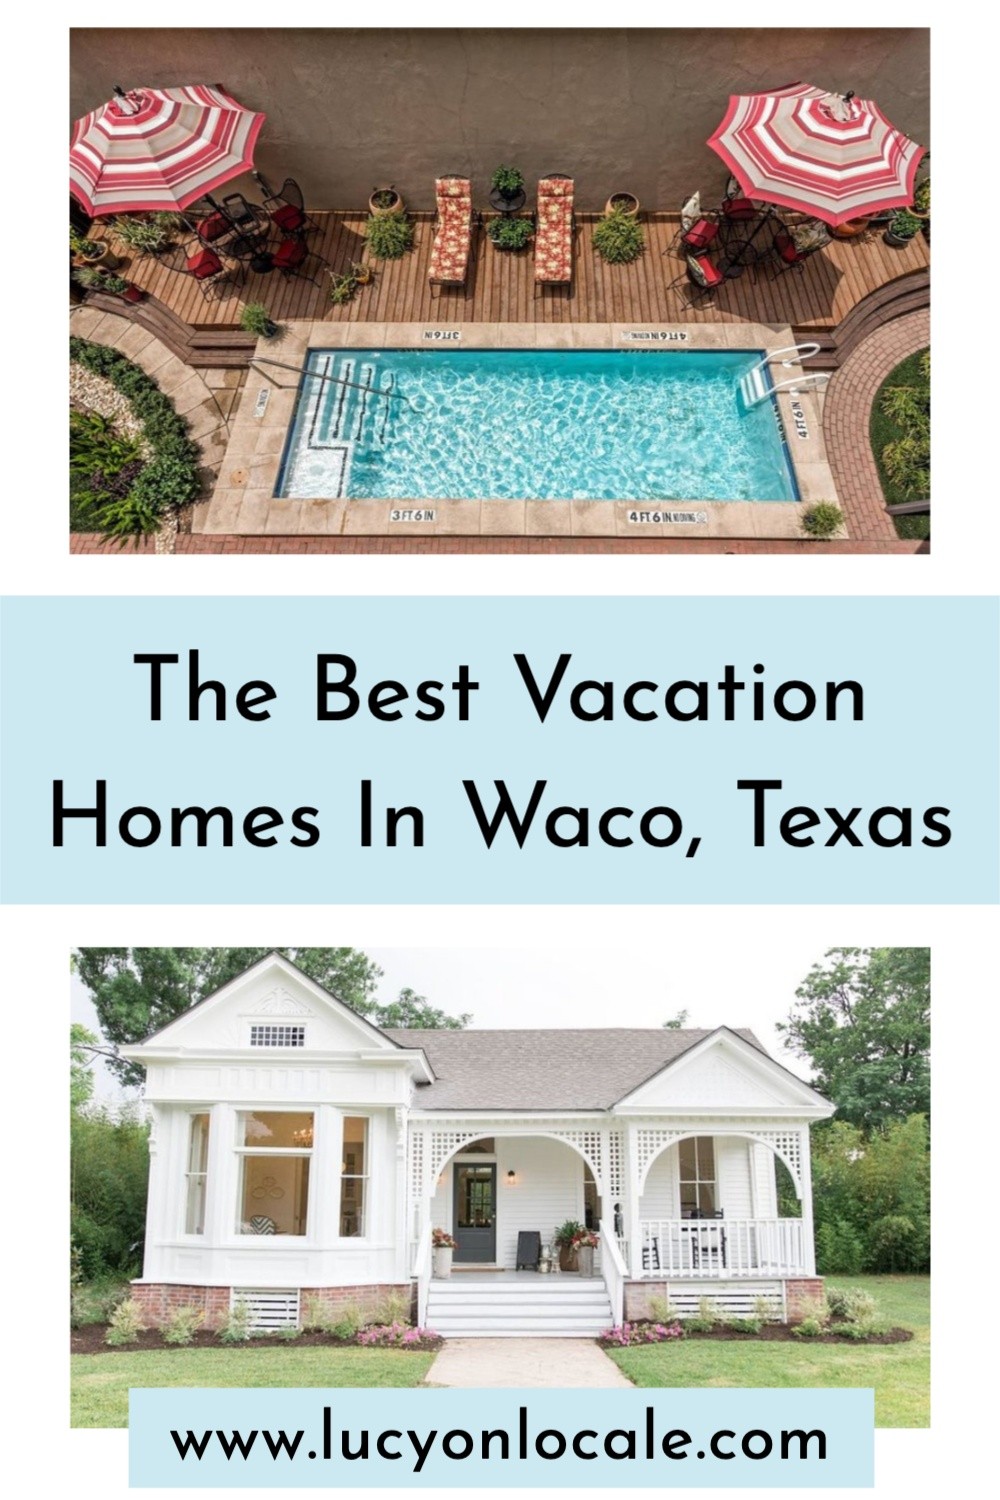 Vacation Home Rentals in Waco, Texas